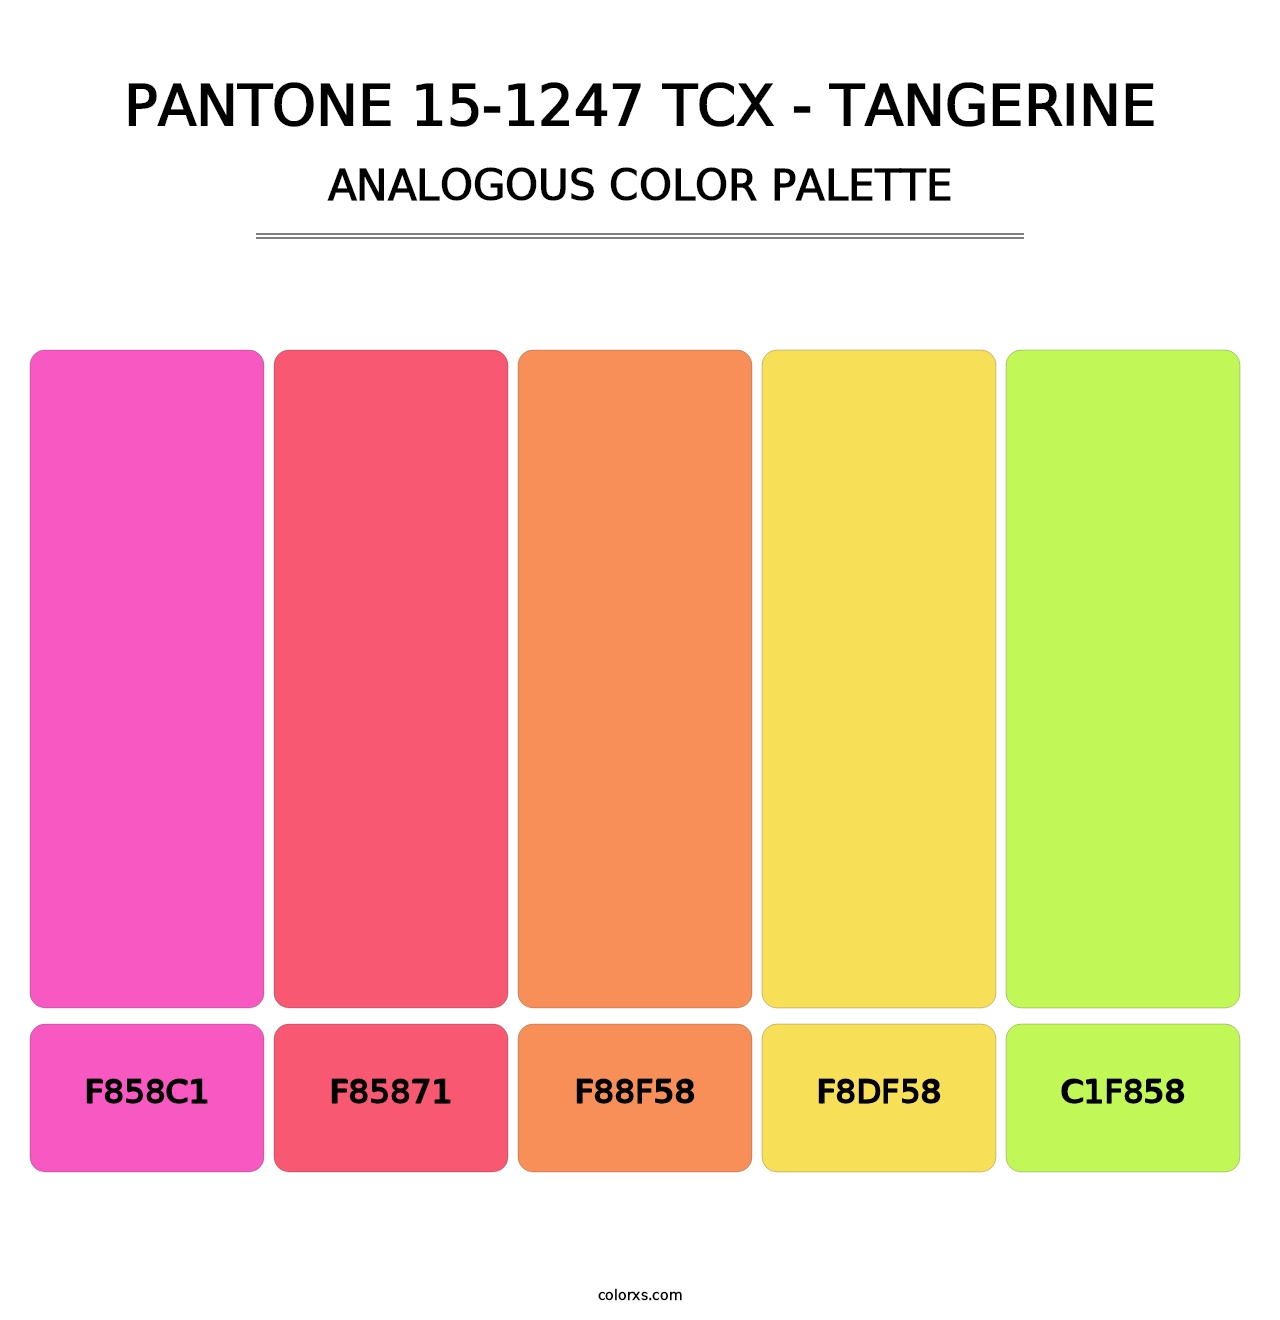 PANTONE 15-1247 TCX - Tangerine - Analogous Color Palette